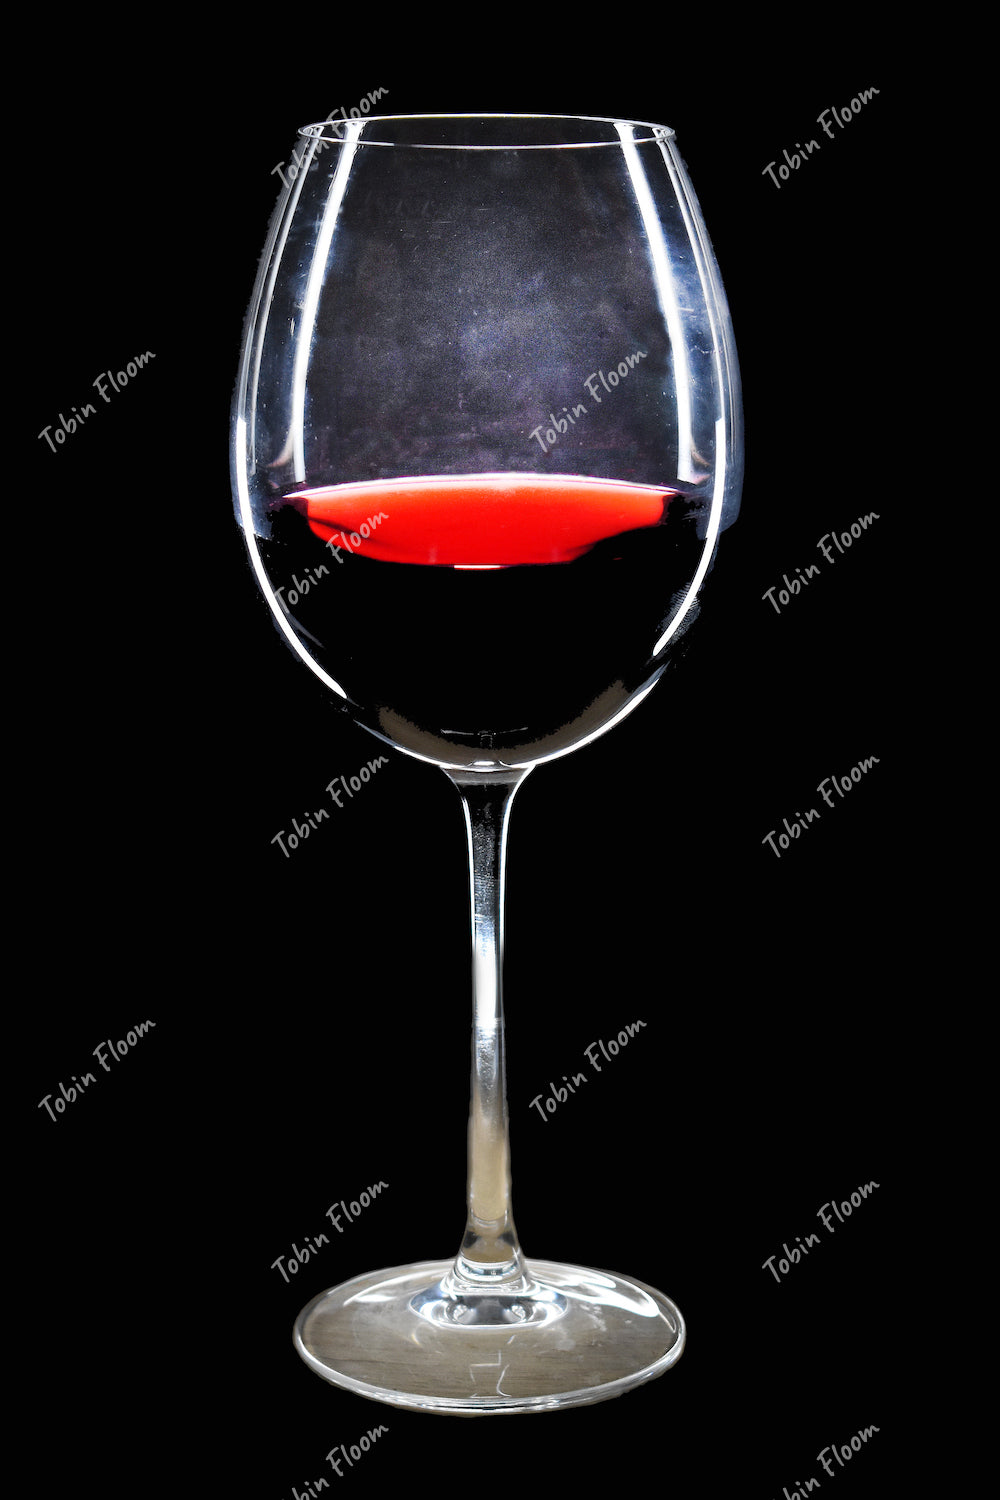 Food n spirits: Red wine